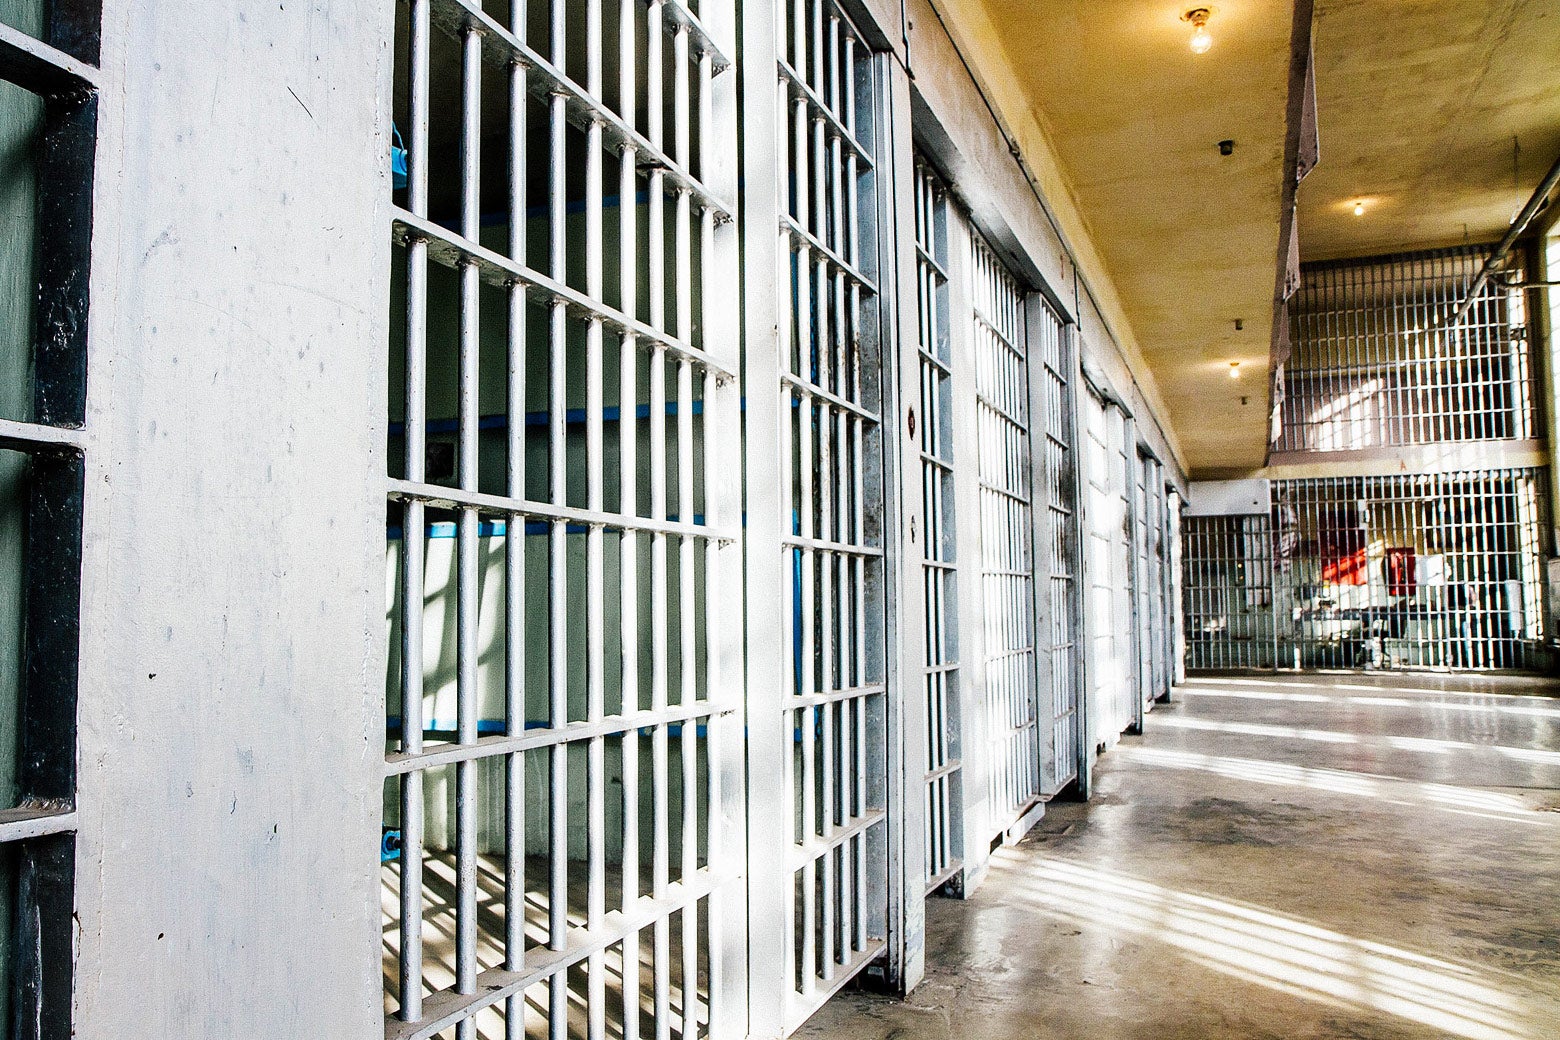 Prison cells.